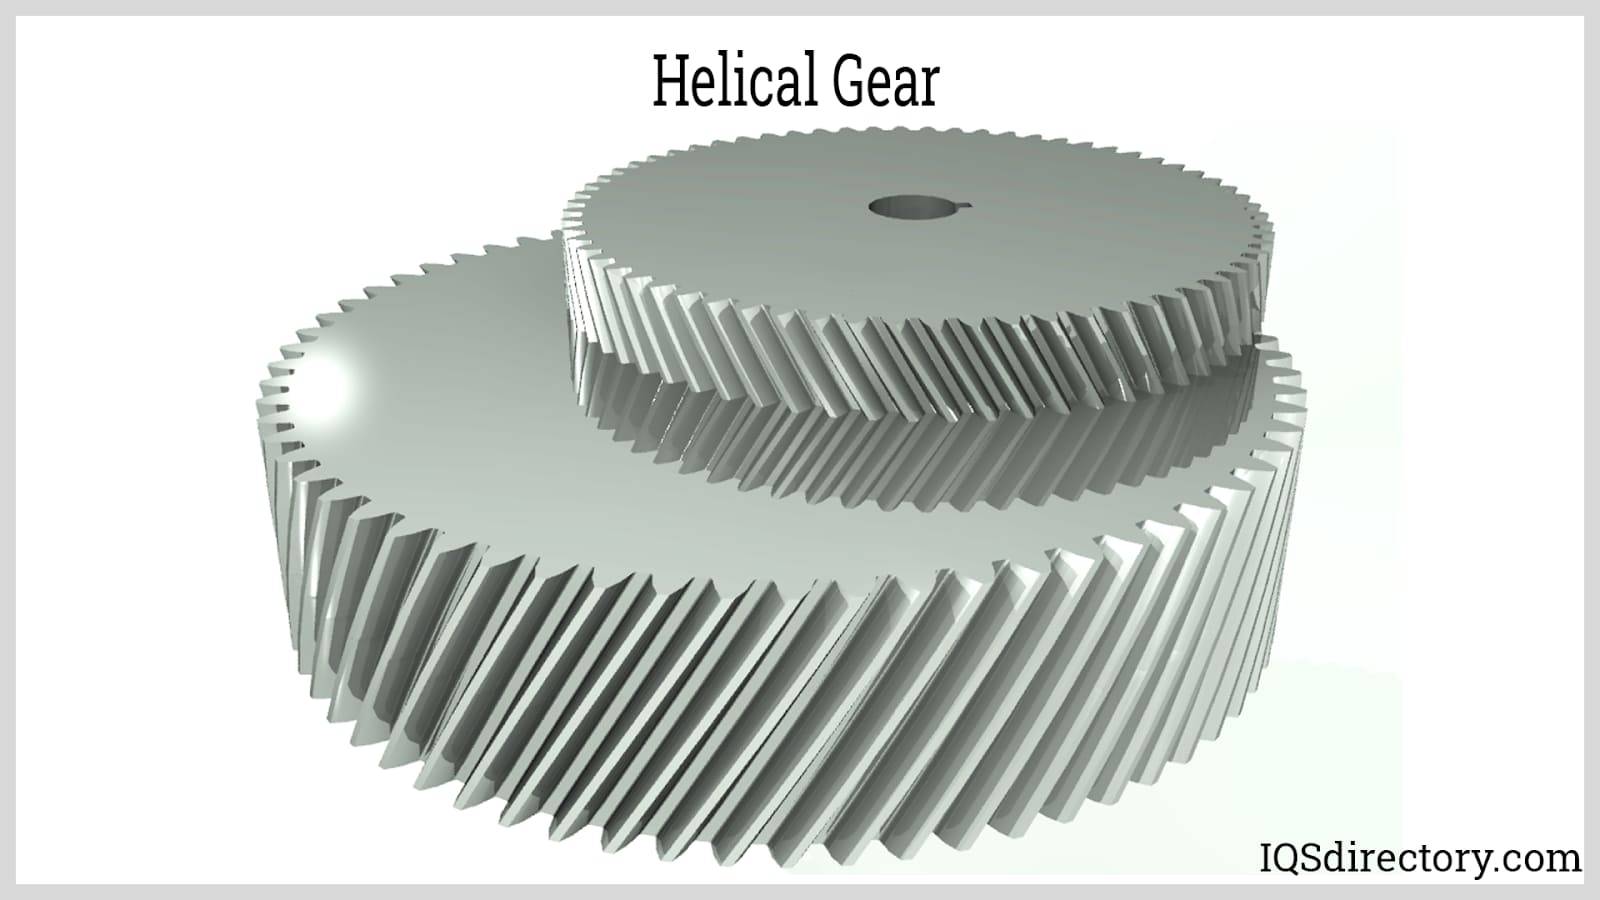 https://www.iqsdirectory.com/articles/gear/helical-gears/helical-gear.jpg